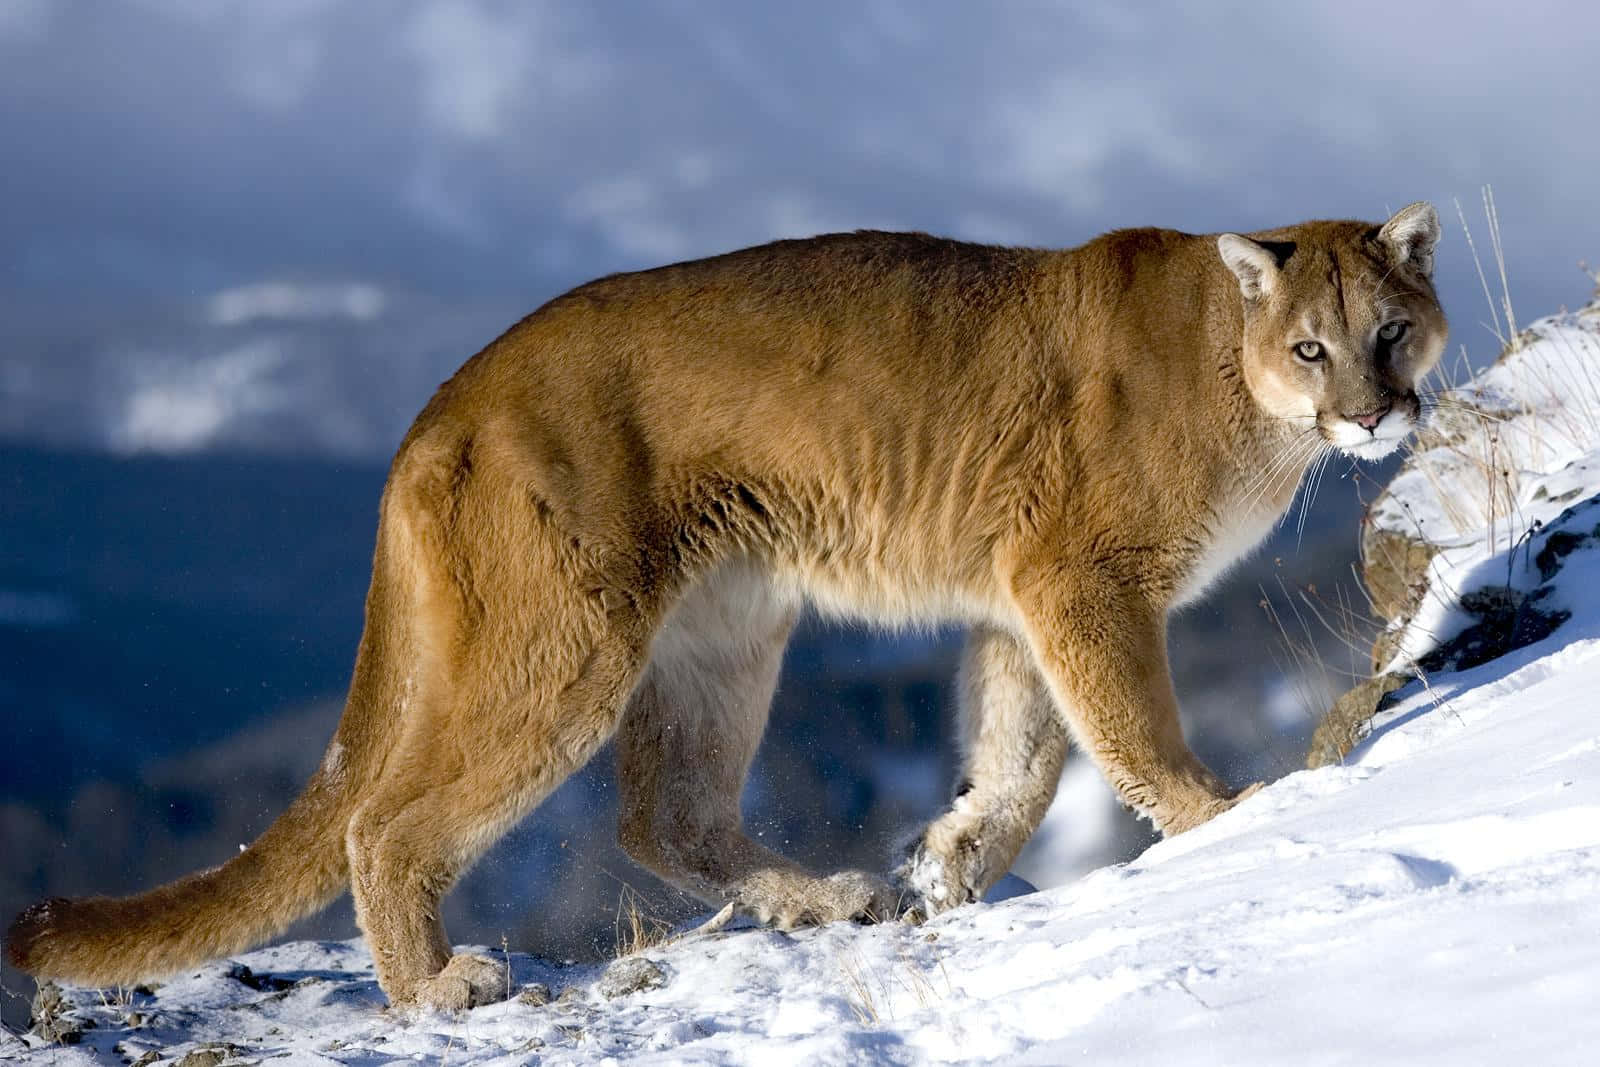 Imagende Un Puma Caminando En La Nieve